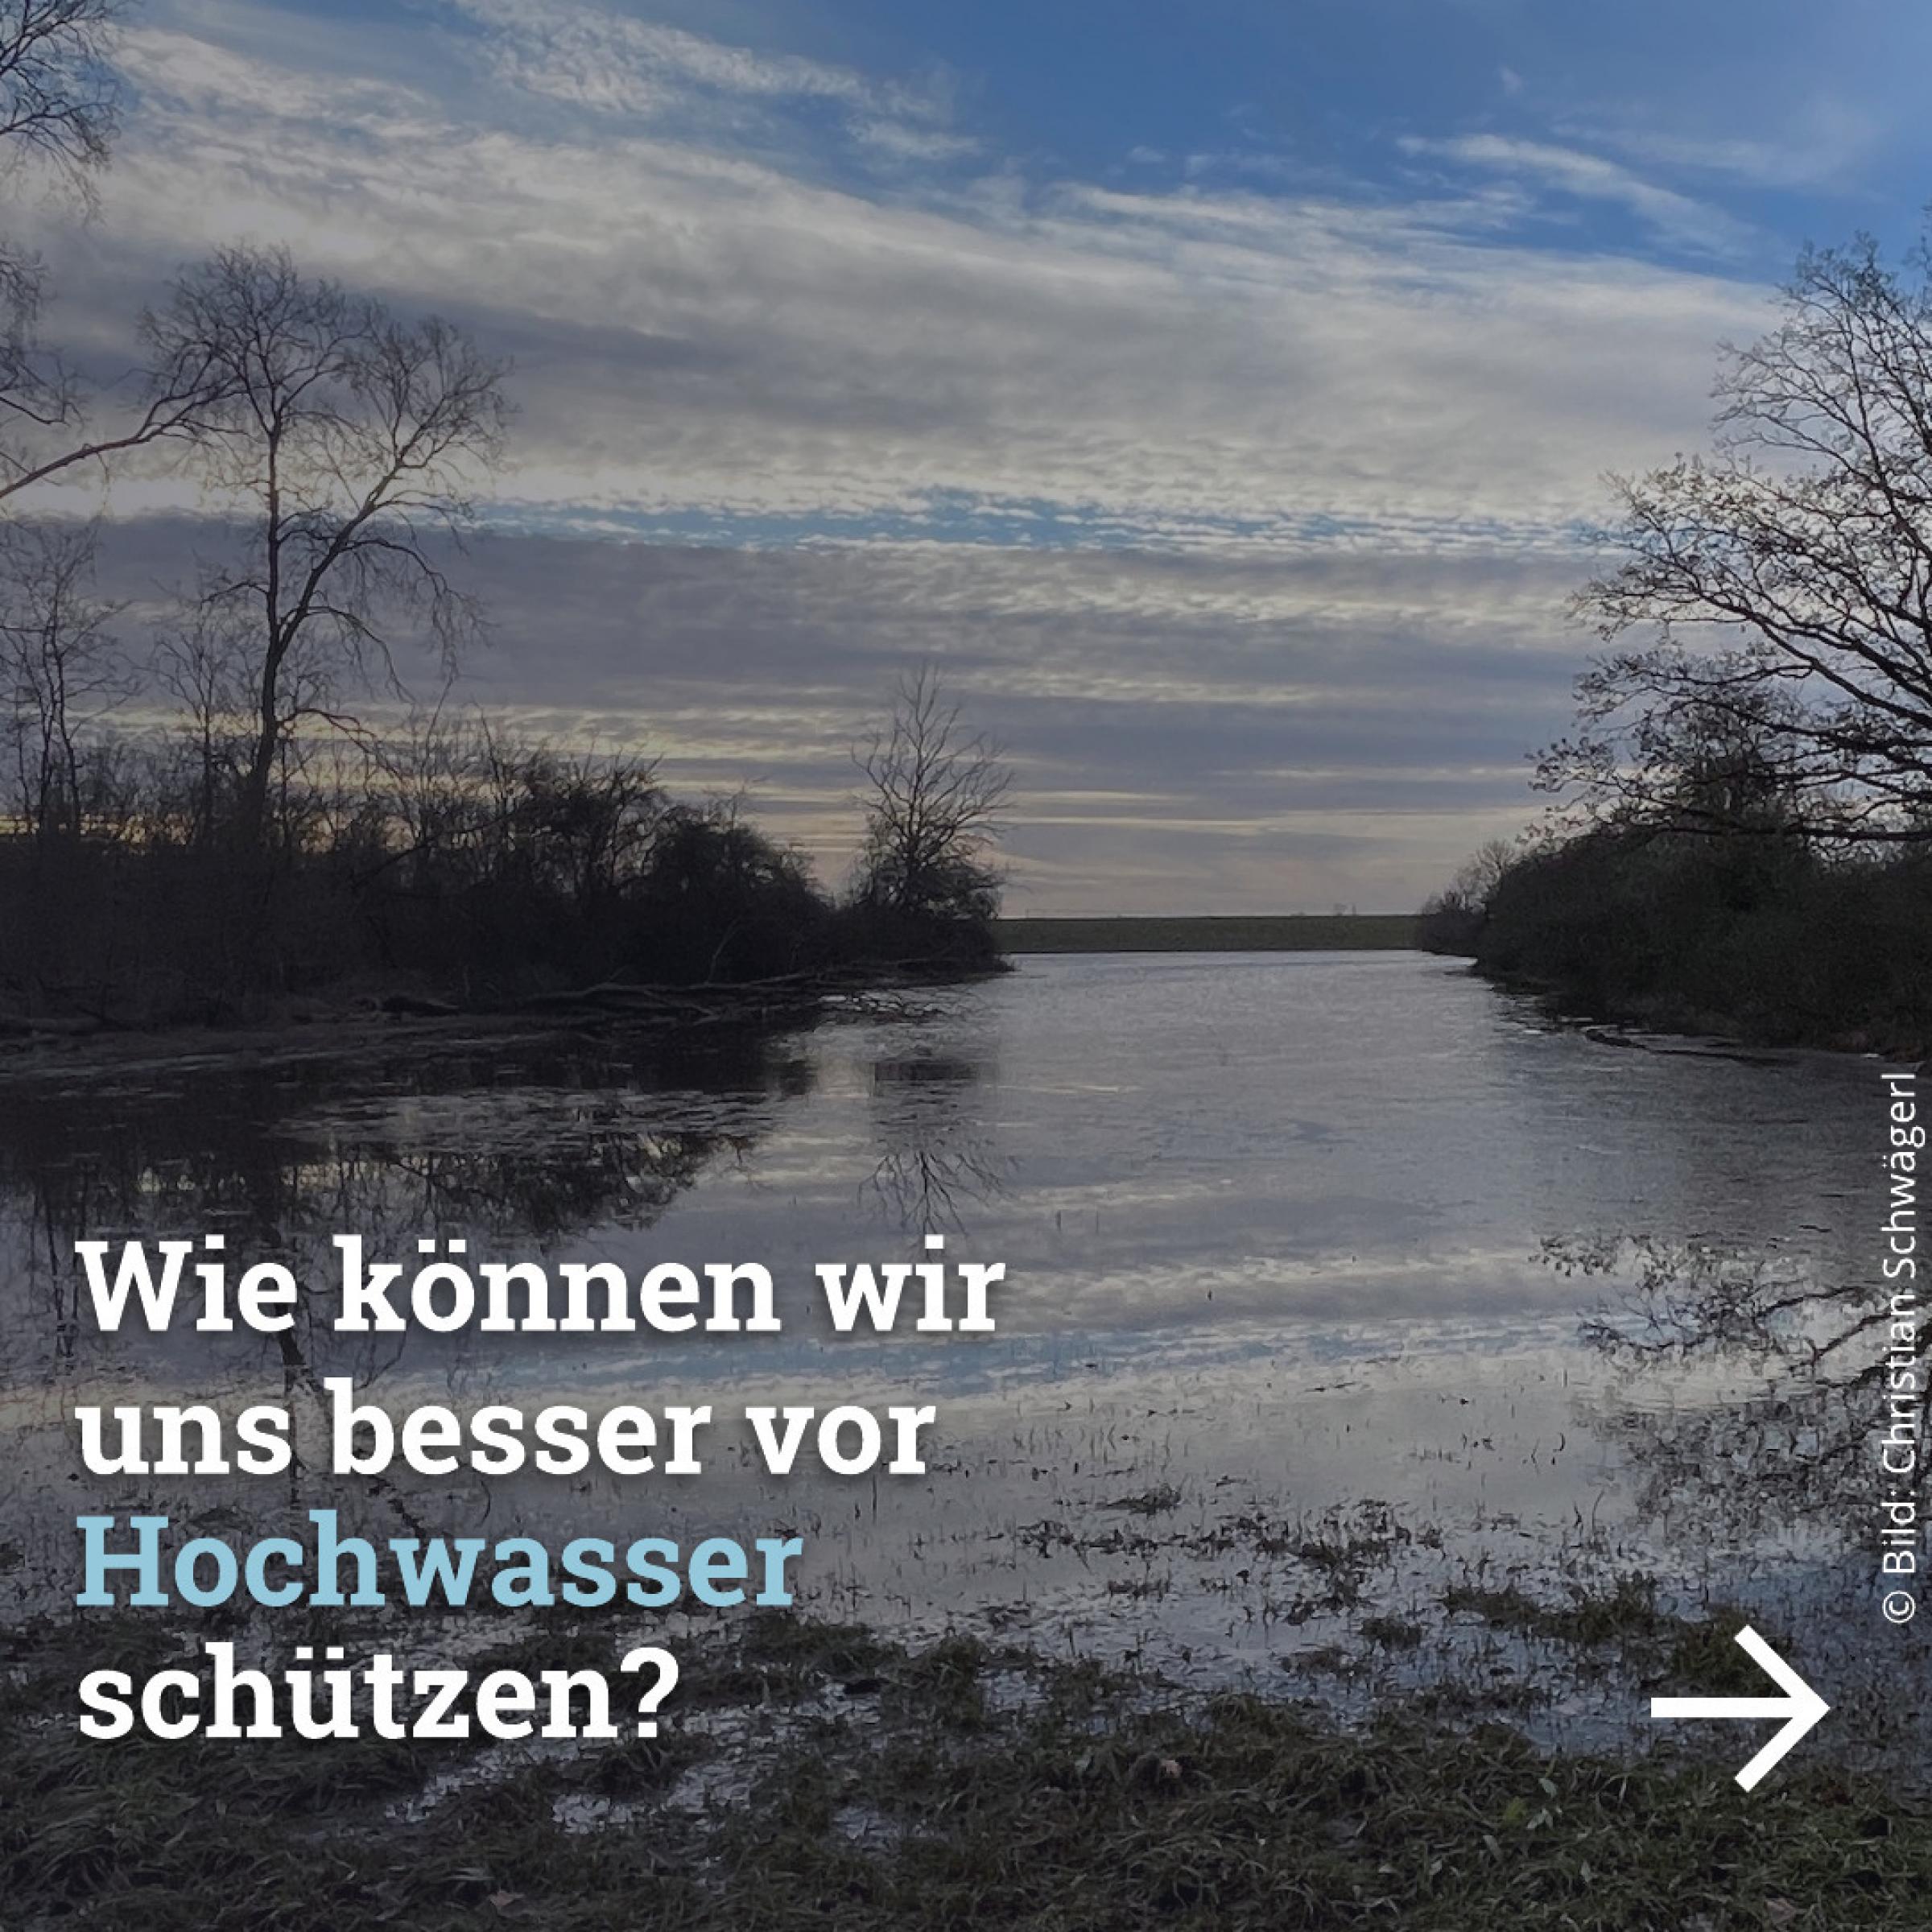 Eine Auenlandschaft. Dazu der Text: „Wie können wir uns besser vor Hochwasser schützen?“